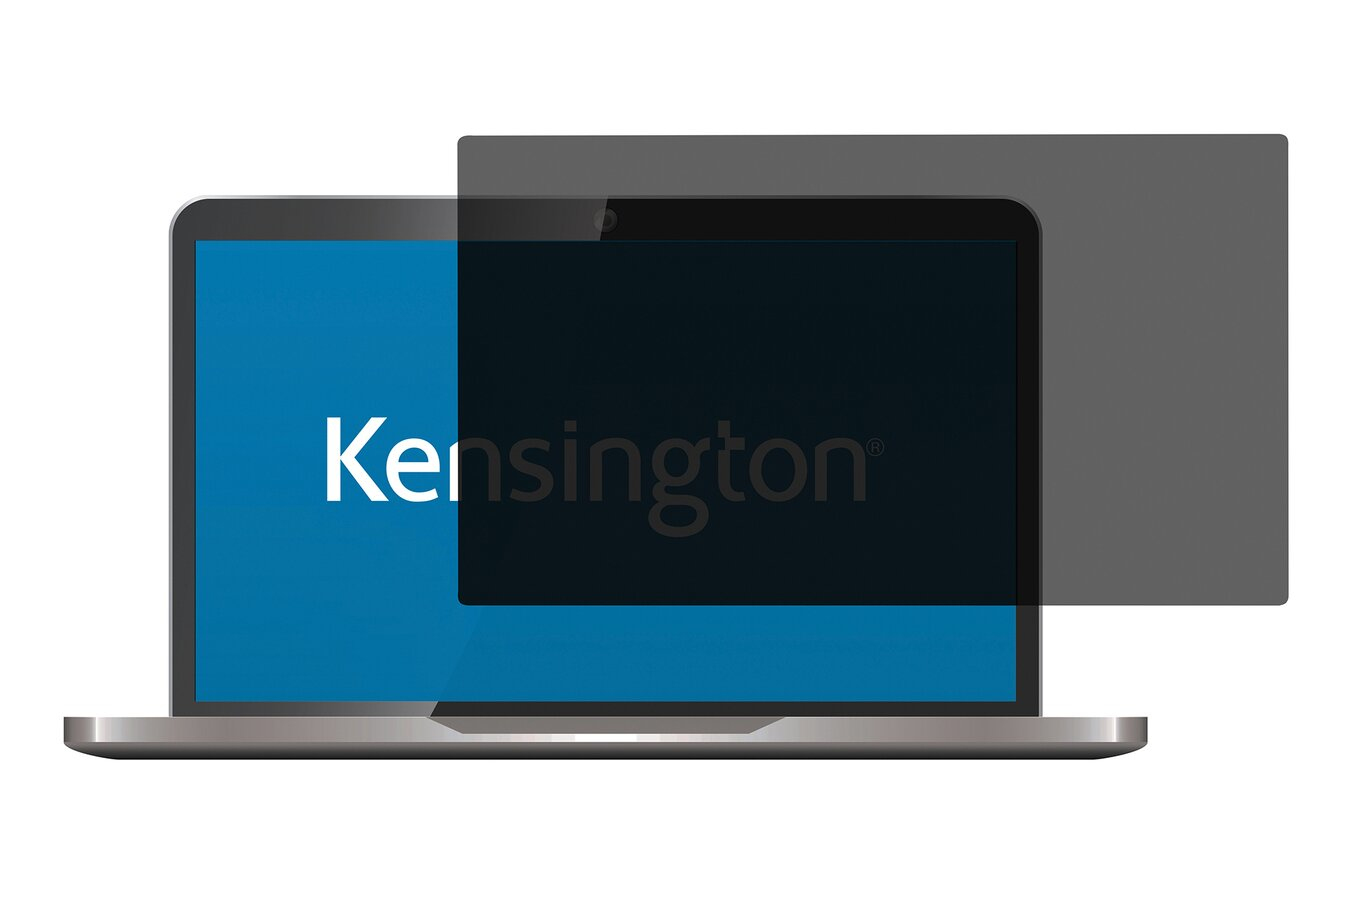 Kensington Filtri per lo schermo - Adesivo, 2 angol., per MacBook Air 13